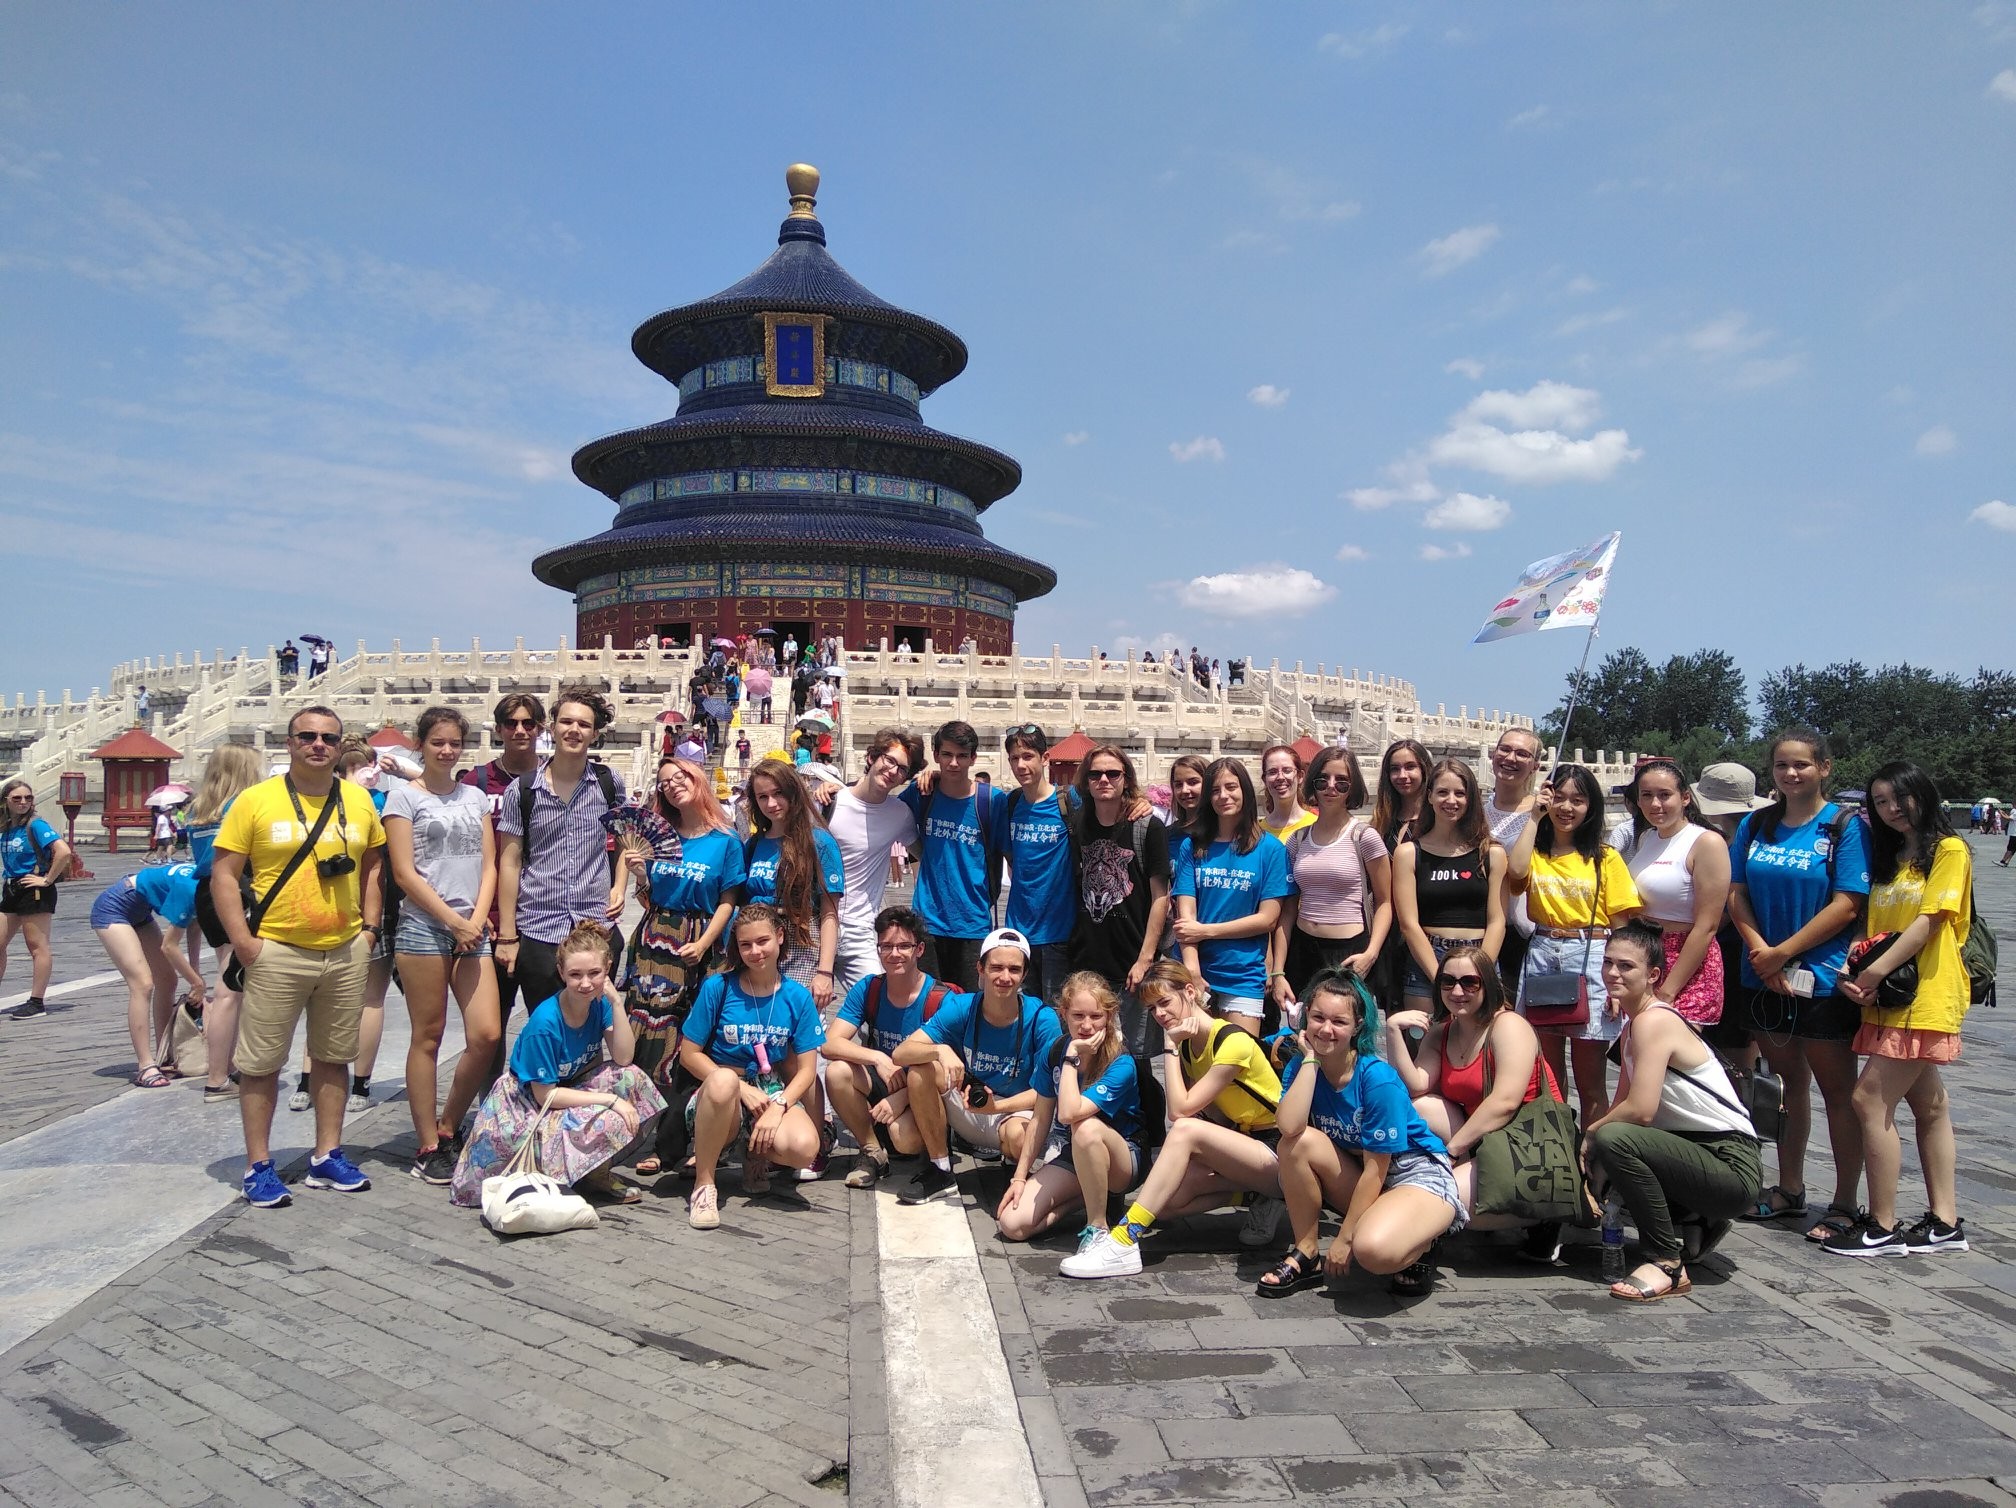 Szombathelyiek Pekingben – ELTE-s nyári tanulmányút Kínában